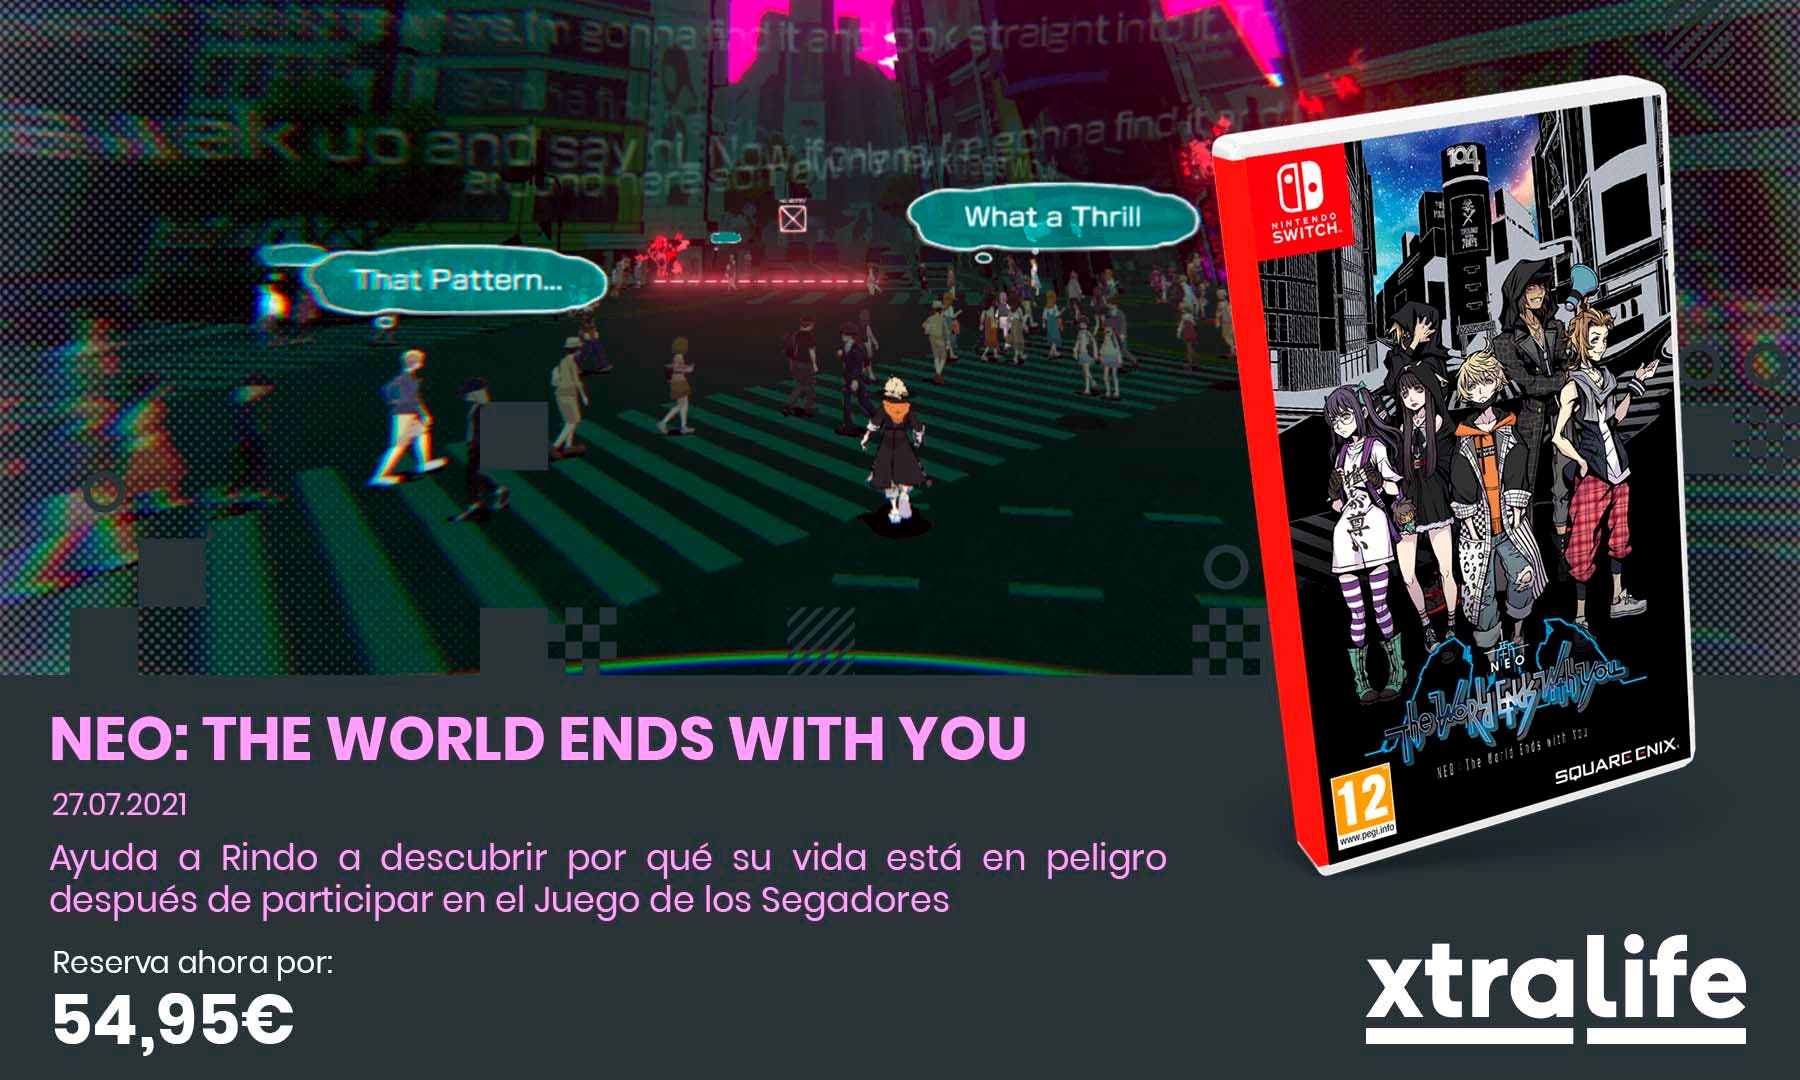 Llega la secuela de The World Ends with You con el nuevo NEO: The World Ends with You: reserva disponible